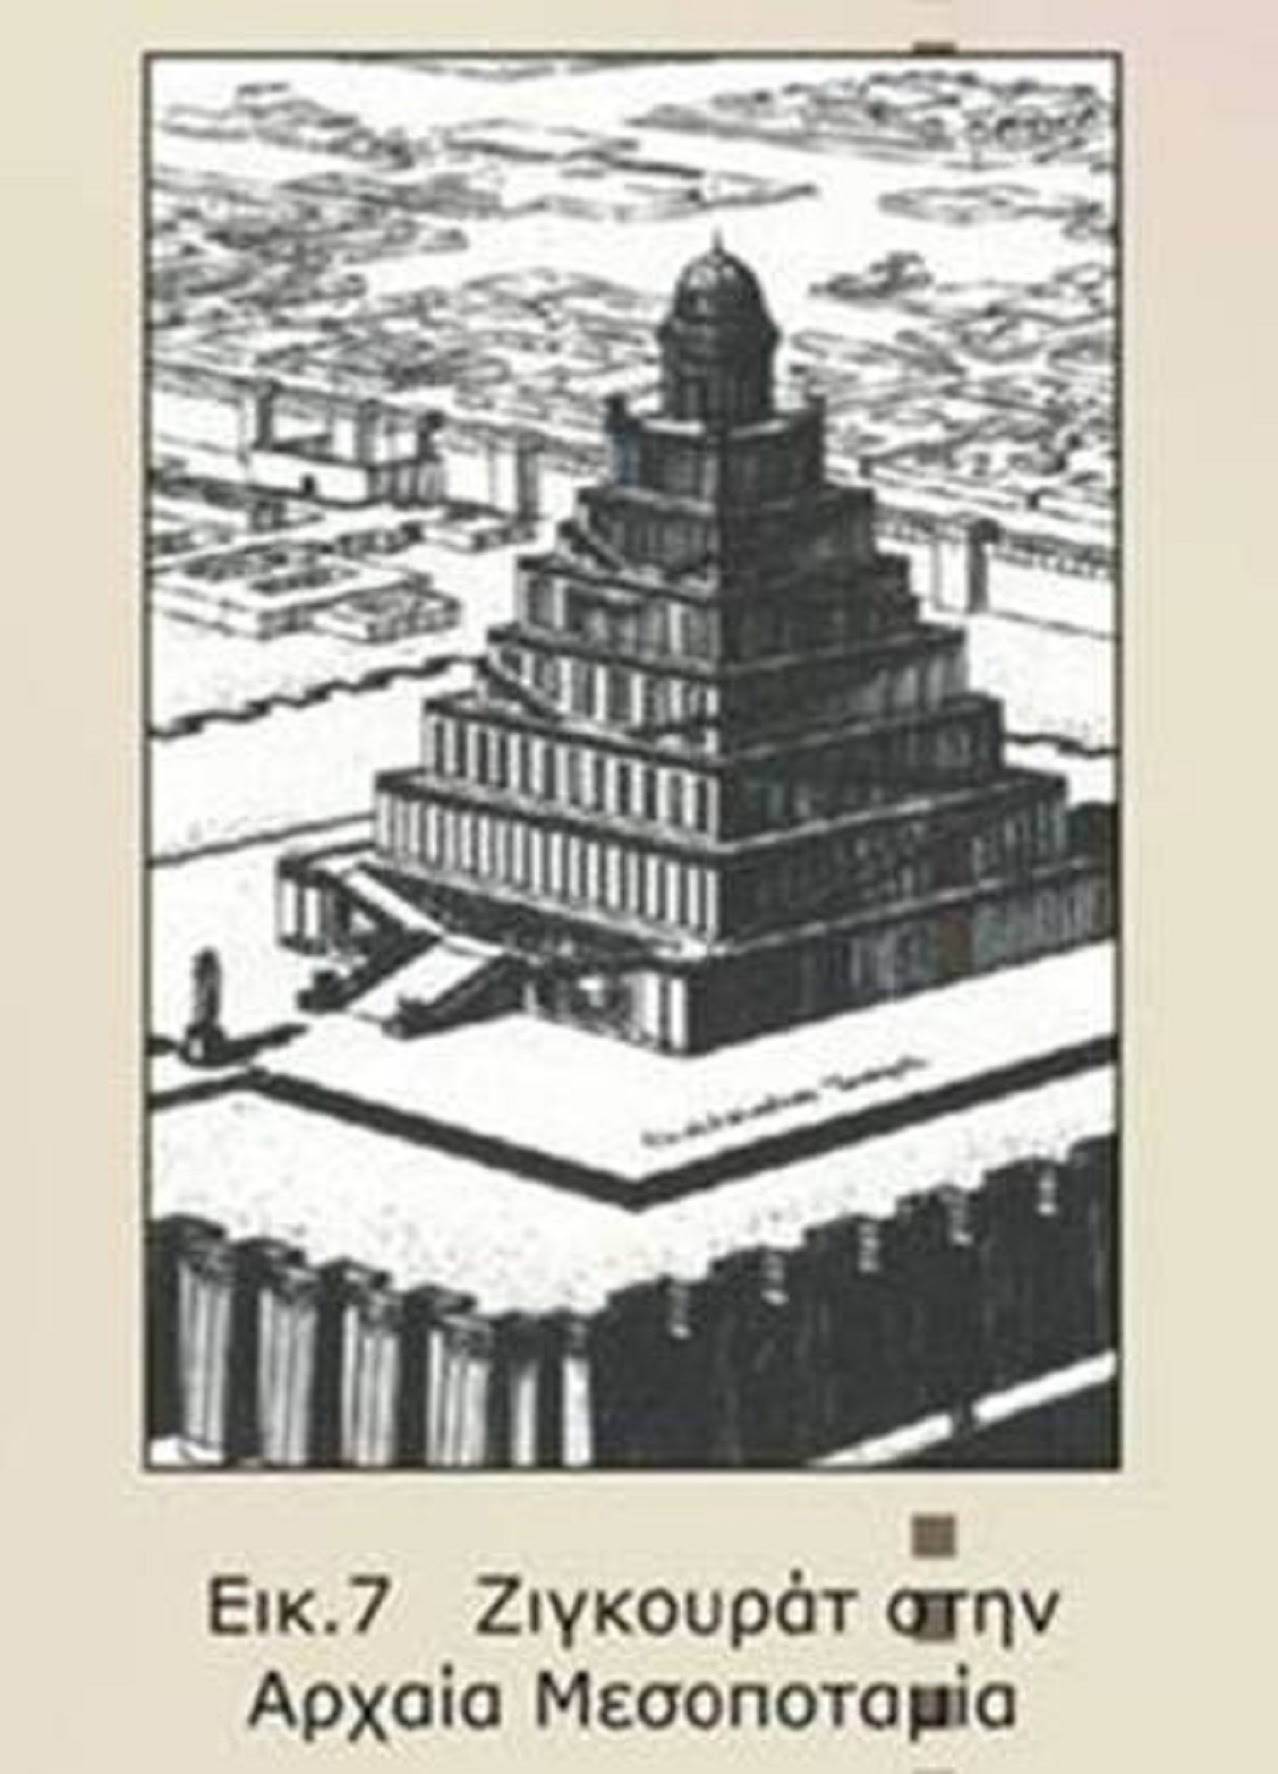 Τα ζιγκουράτ: Προ-πυραμίδες;